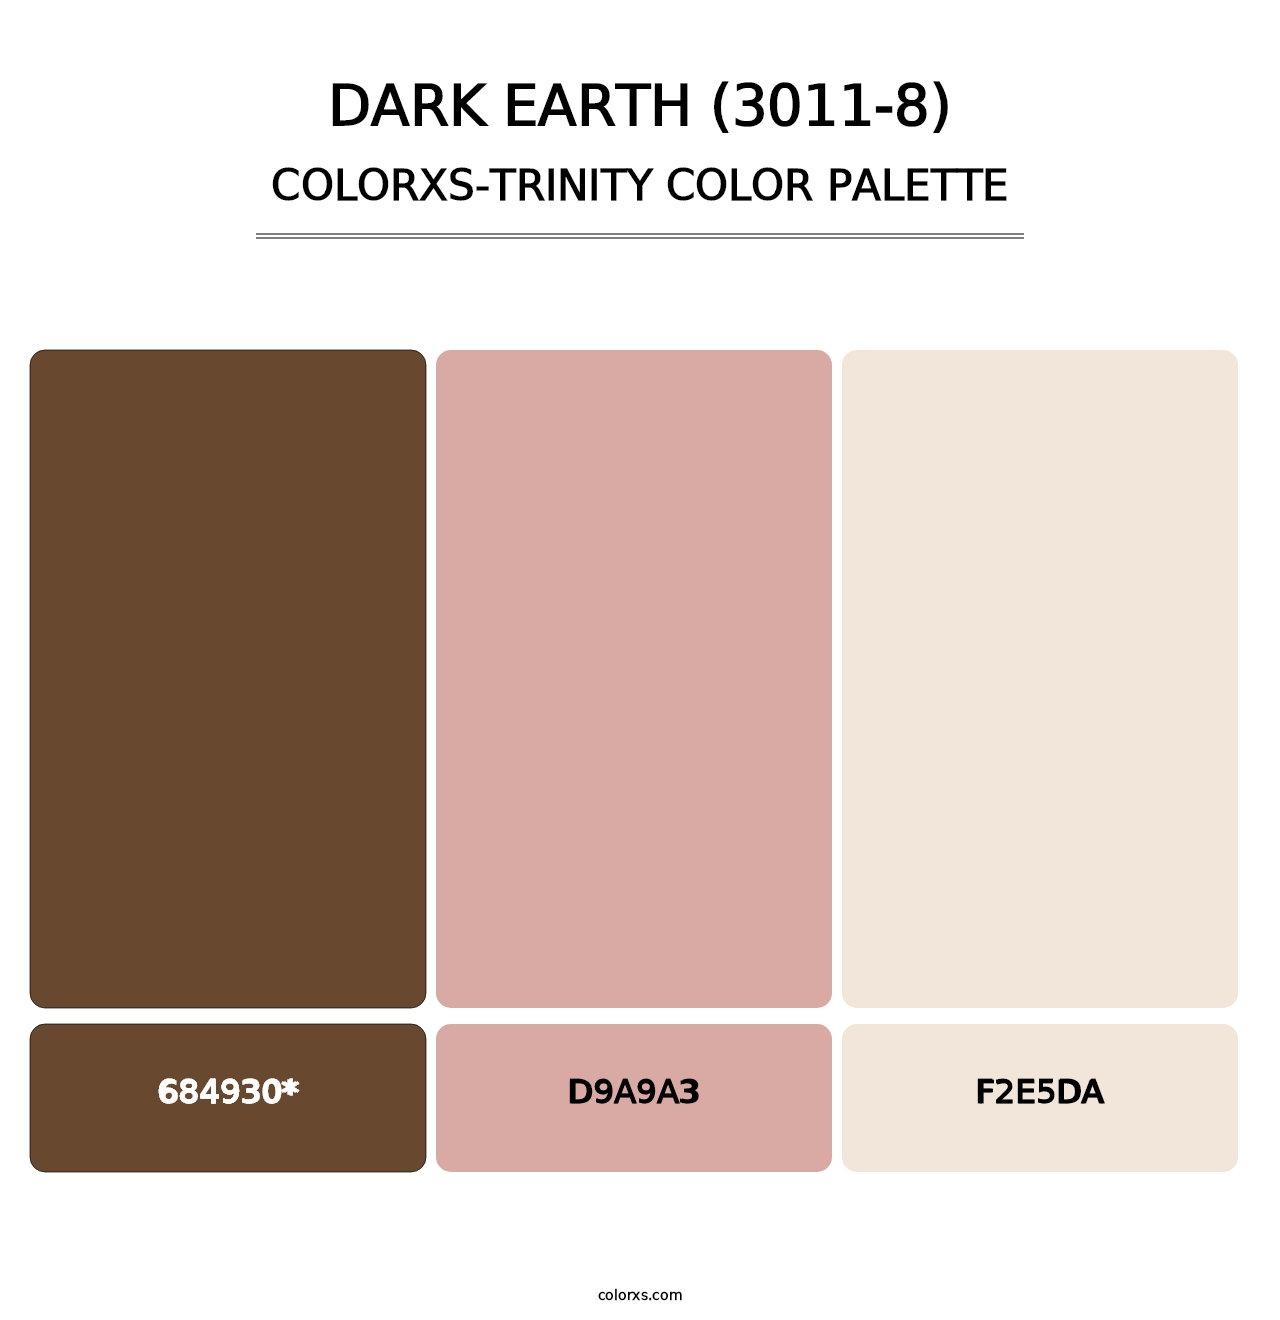 Dark Earth (3011-8) - Colorxs Trinity Palette